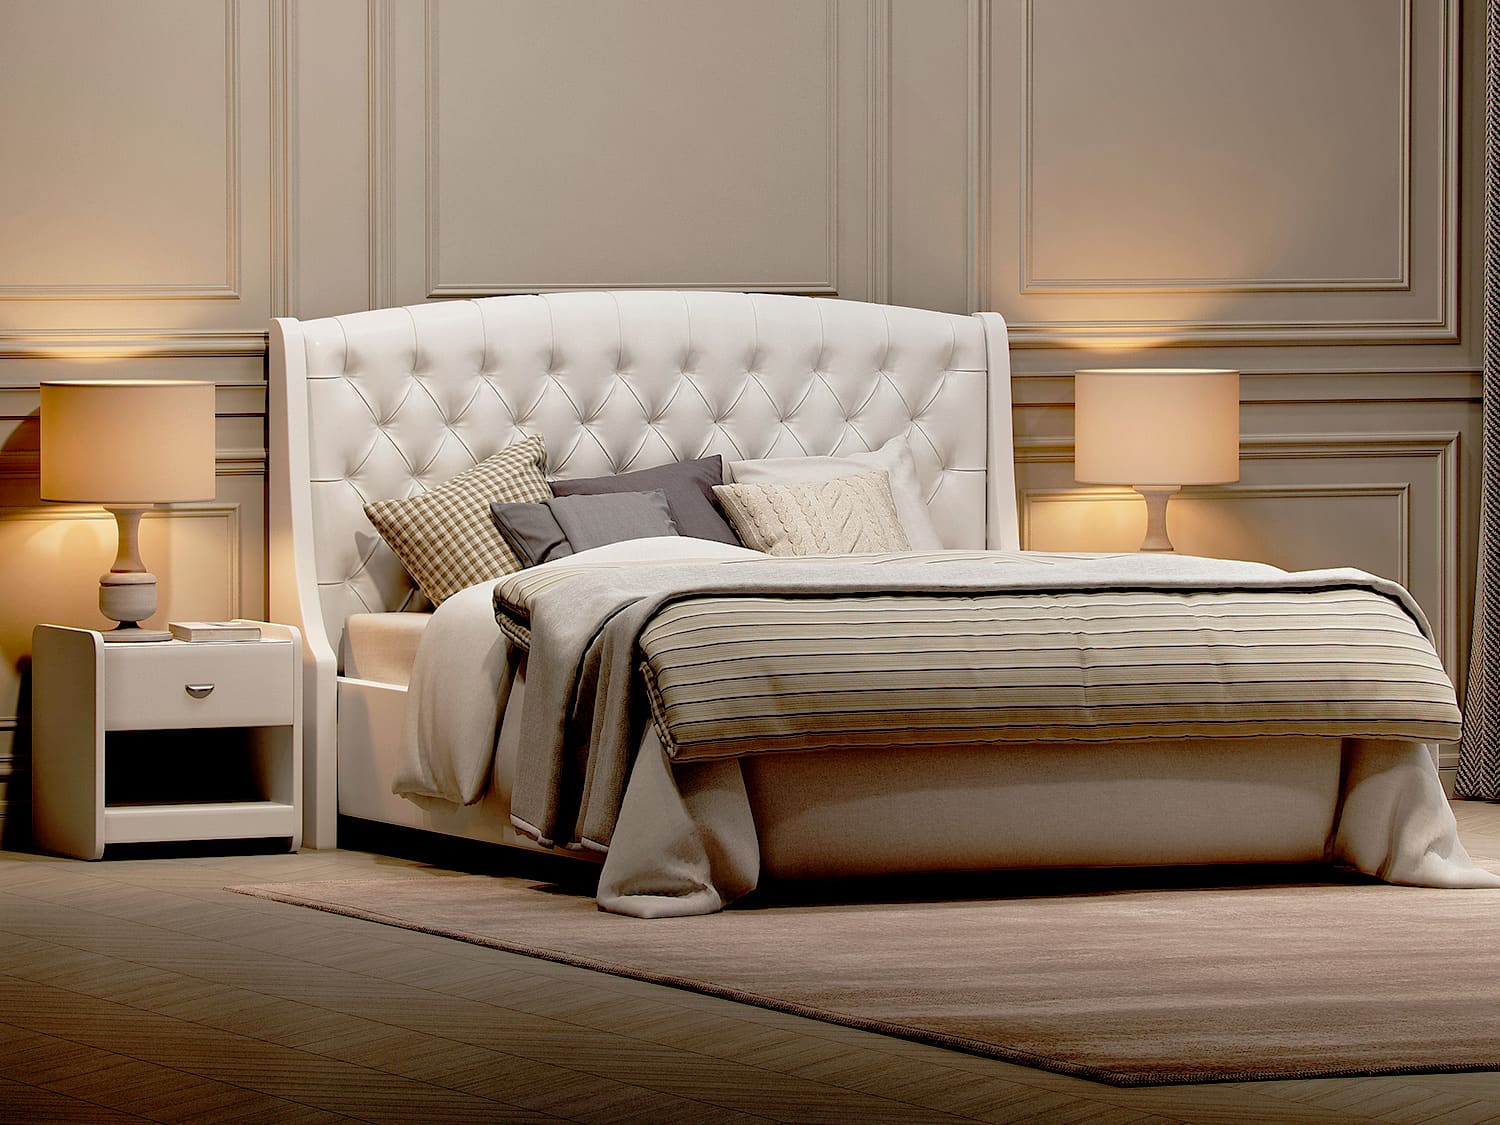 Интерьерная кровать Calipso - элегантная кровать в стиле прованс от производителя «АСАНА»